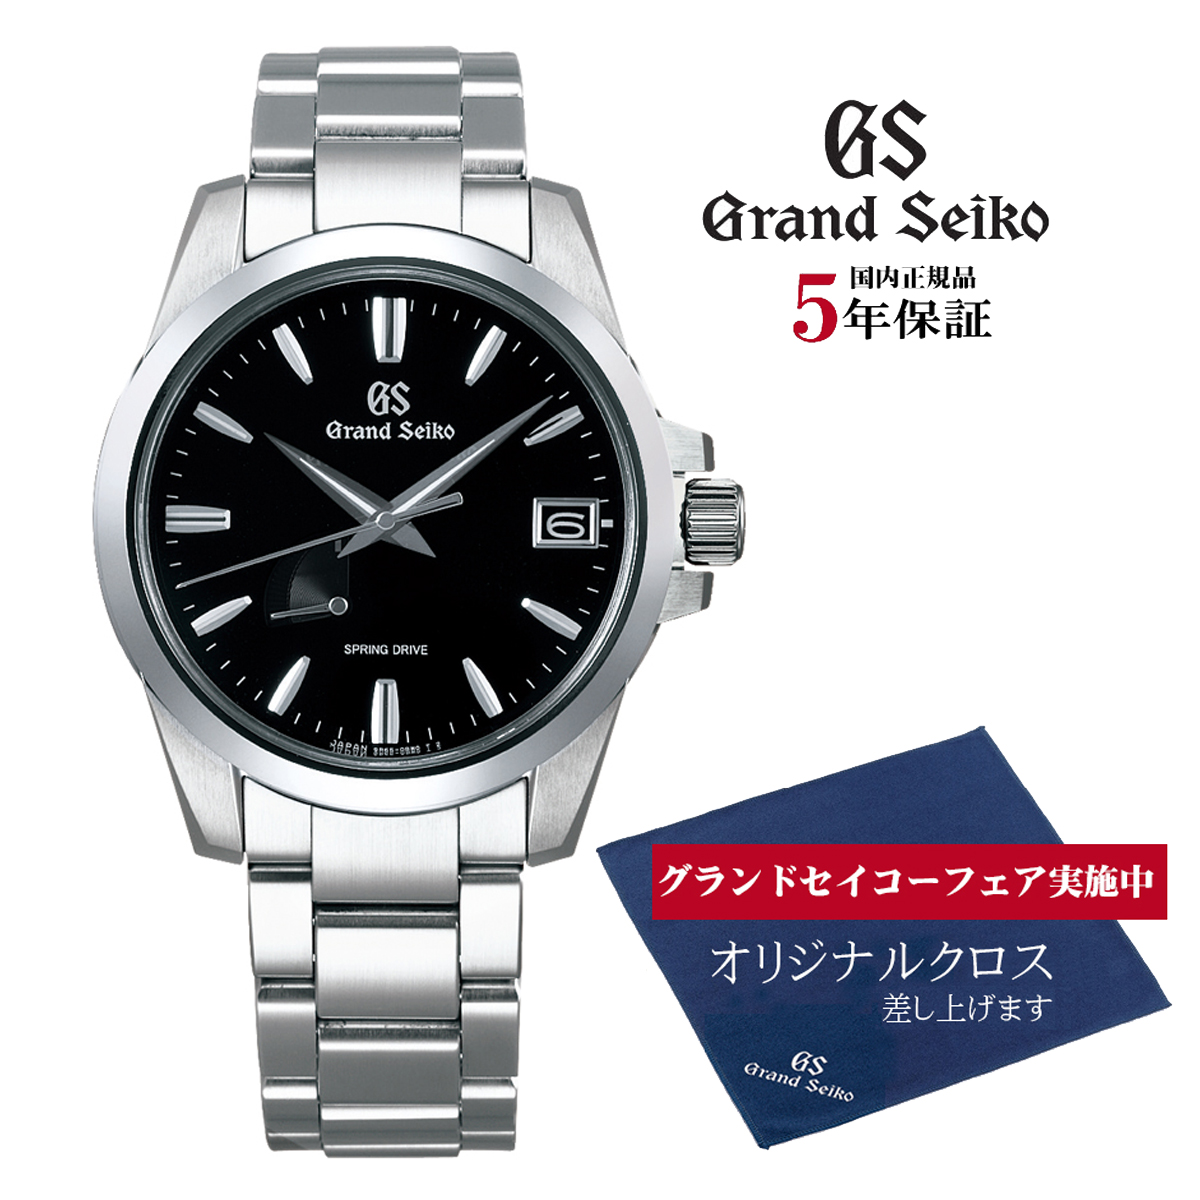 正規品 送料無料 スプリングドライブ メンズ   【オリジナルクロスプレゼント】 グランドセイコー Grand Seiko SBGA227 9Rスプリングドライブ 正規品 腕時計